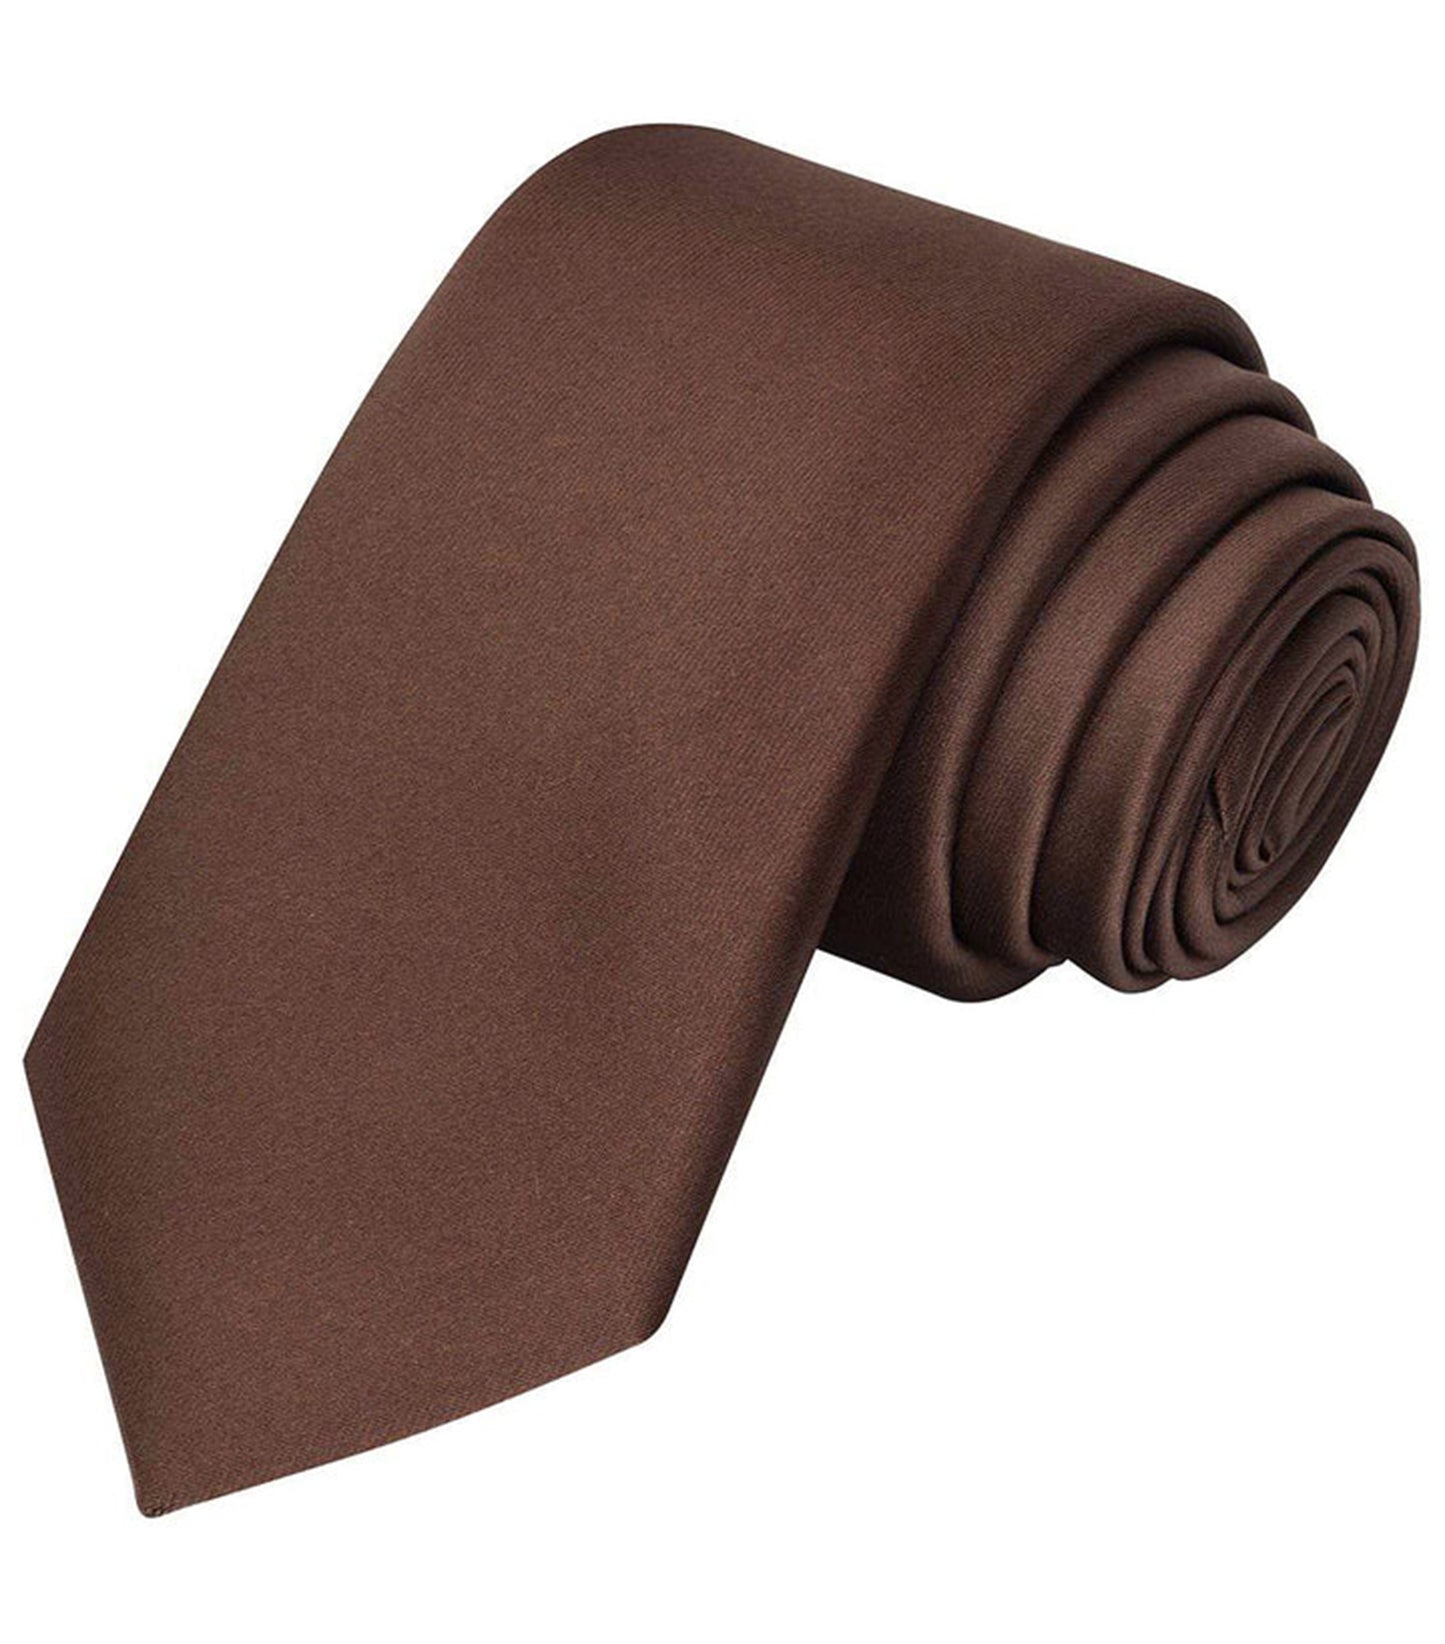 Brown Satin tie | high-quality necktie